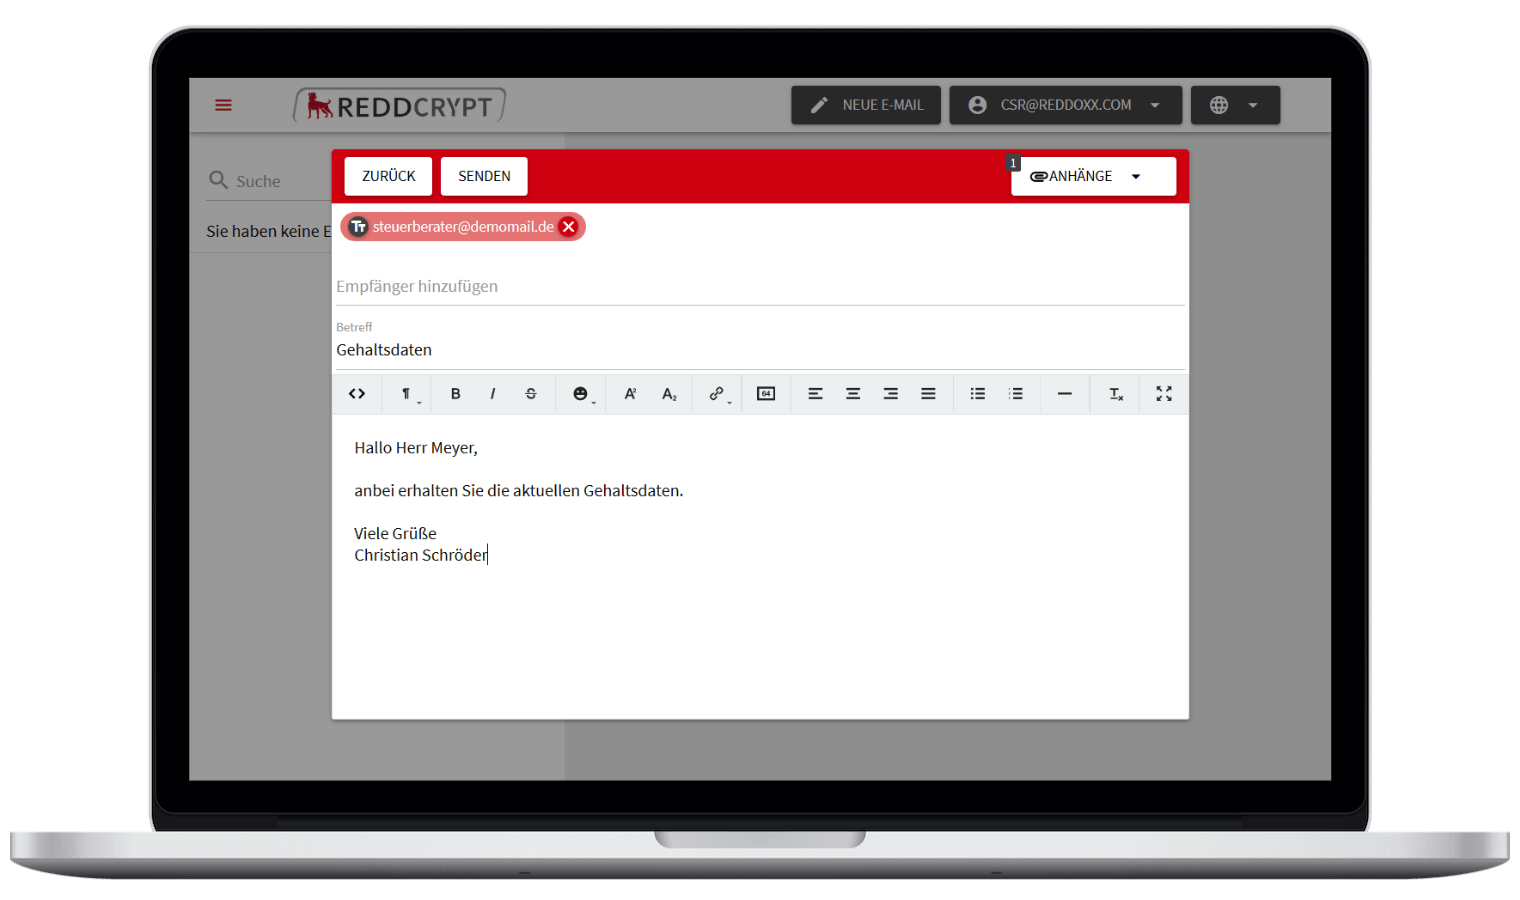 Mit der REDDCRYPT Web App können Sie Ihre E-Mail auf jedem Gerät ver- und entschlüsseln - ganz ohne Zertifikate